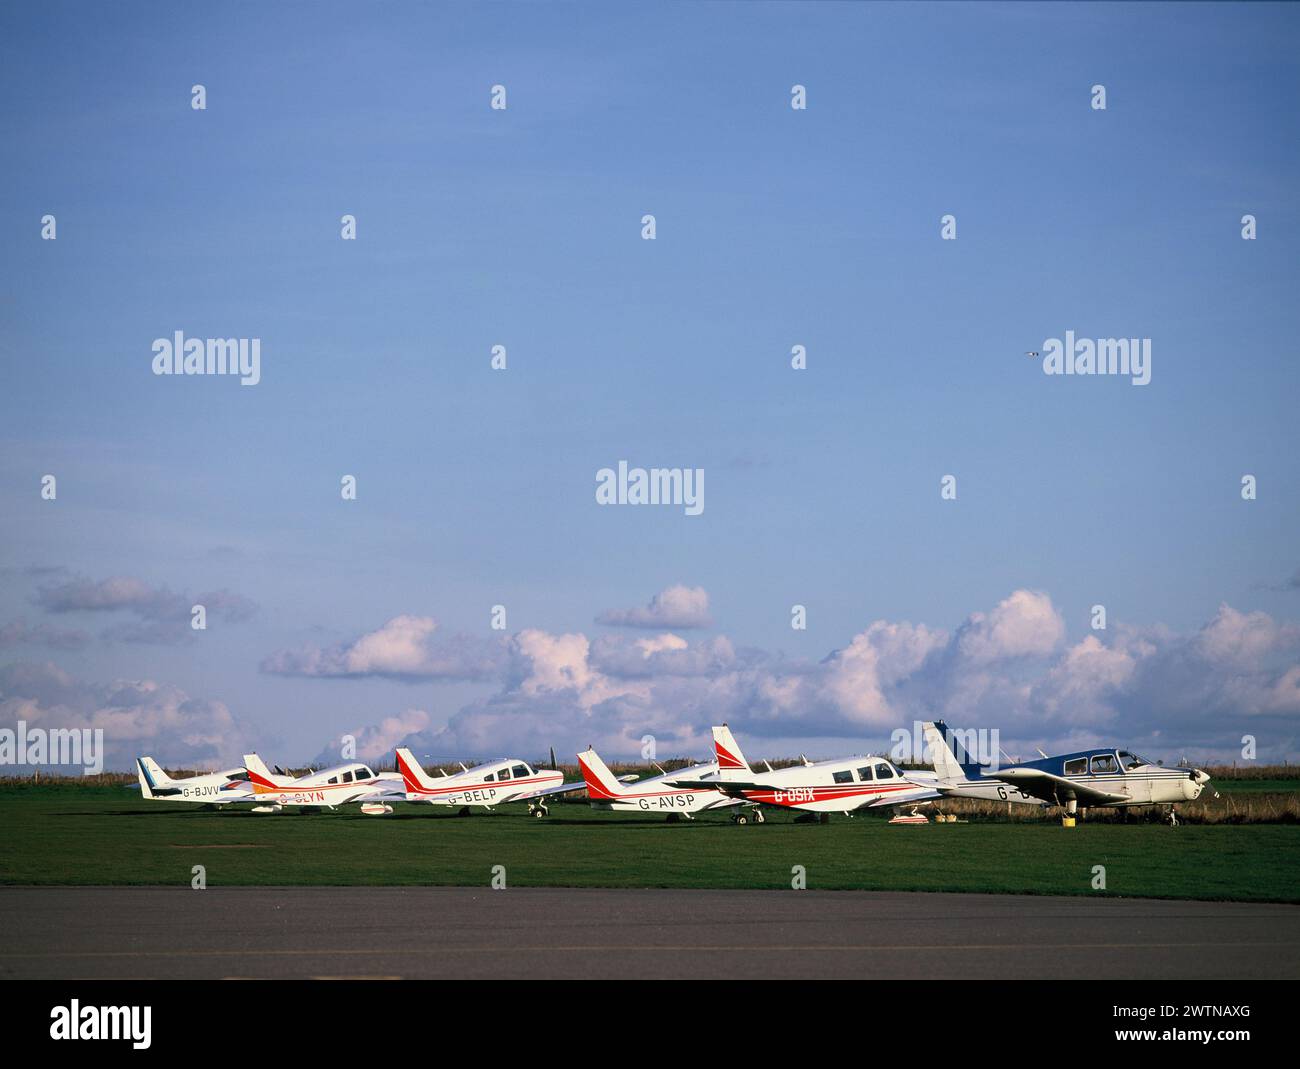 Îles Anglo-Normandes Alderney. Rangée d'avions légers sur l'aire de trafic d'herbe de l'aéroport. Banque D'Images